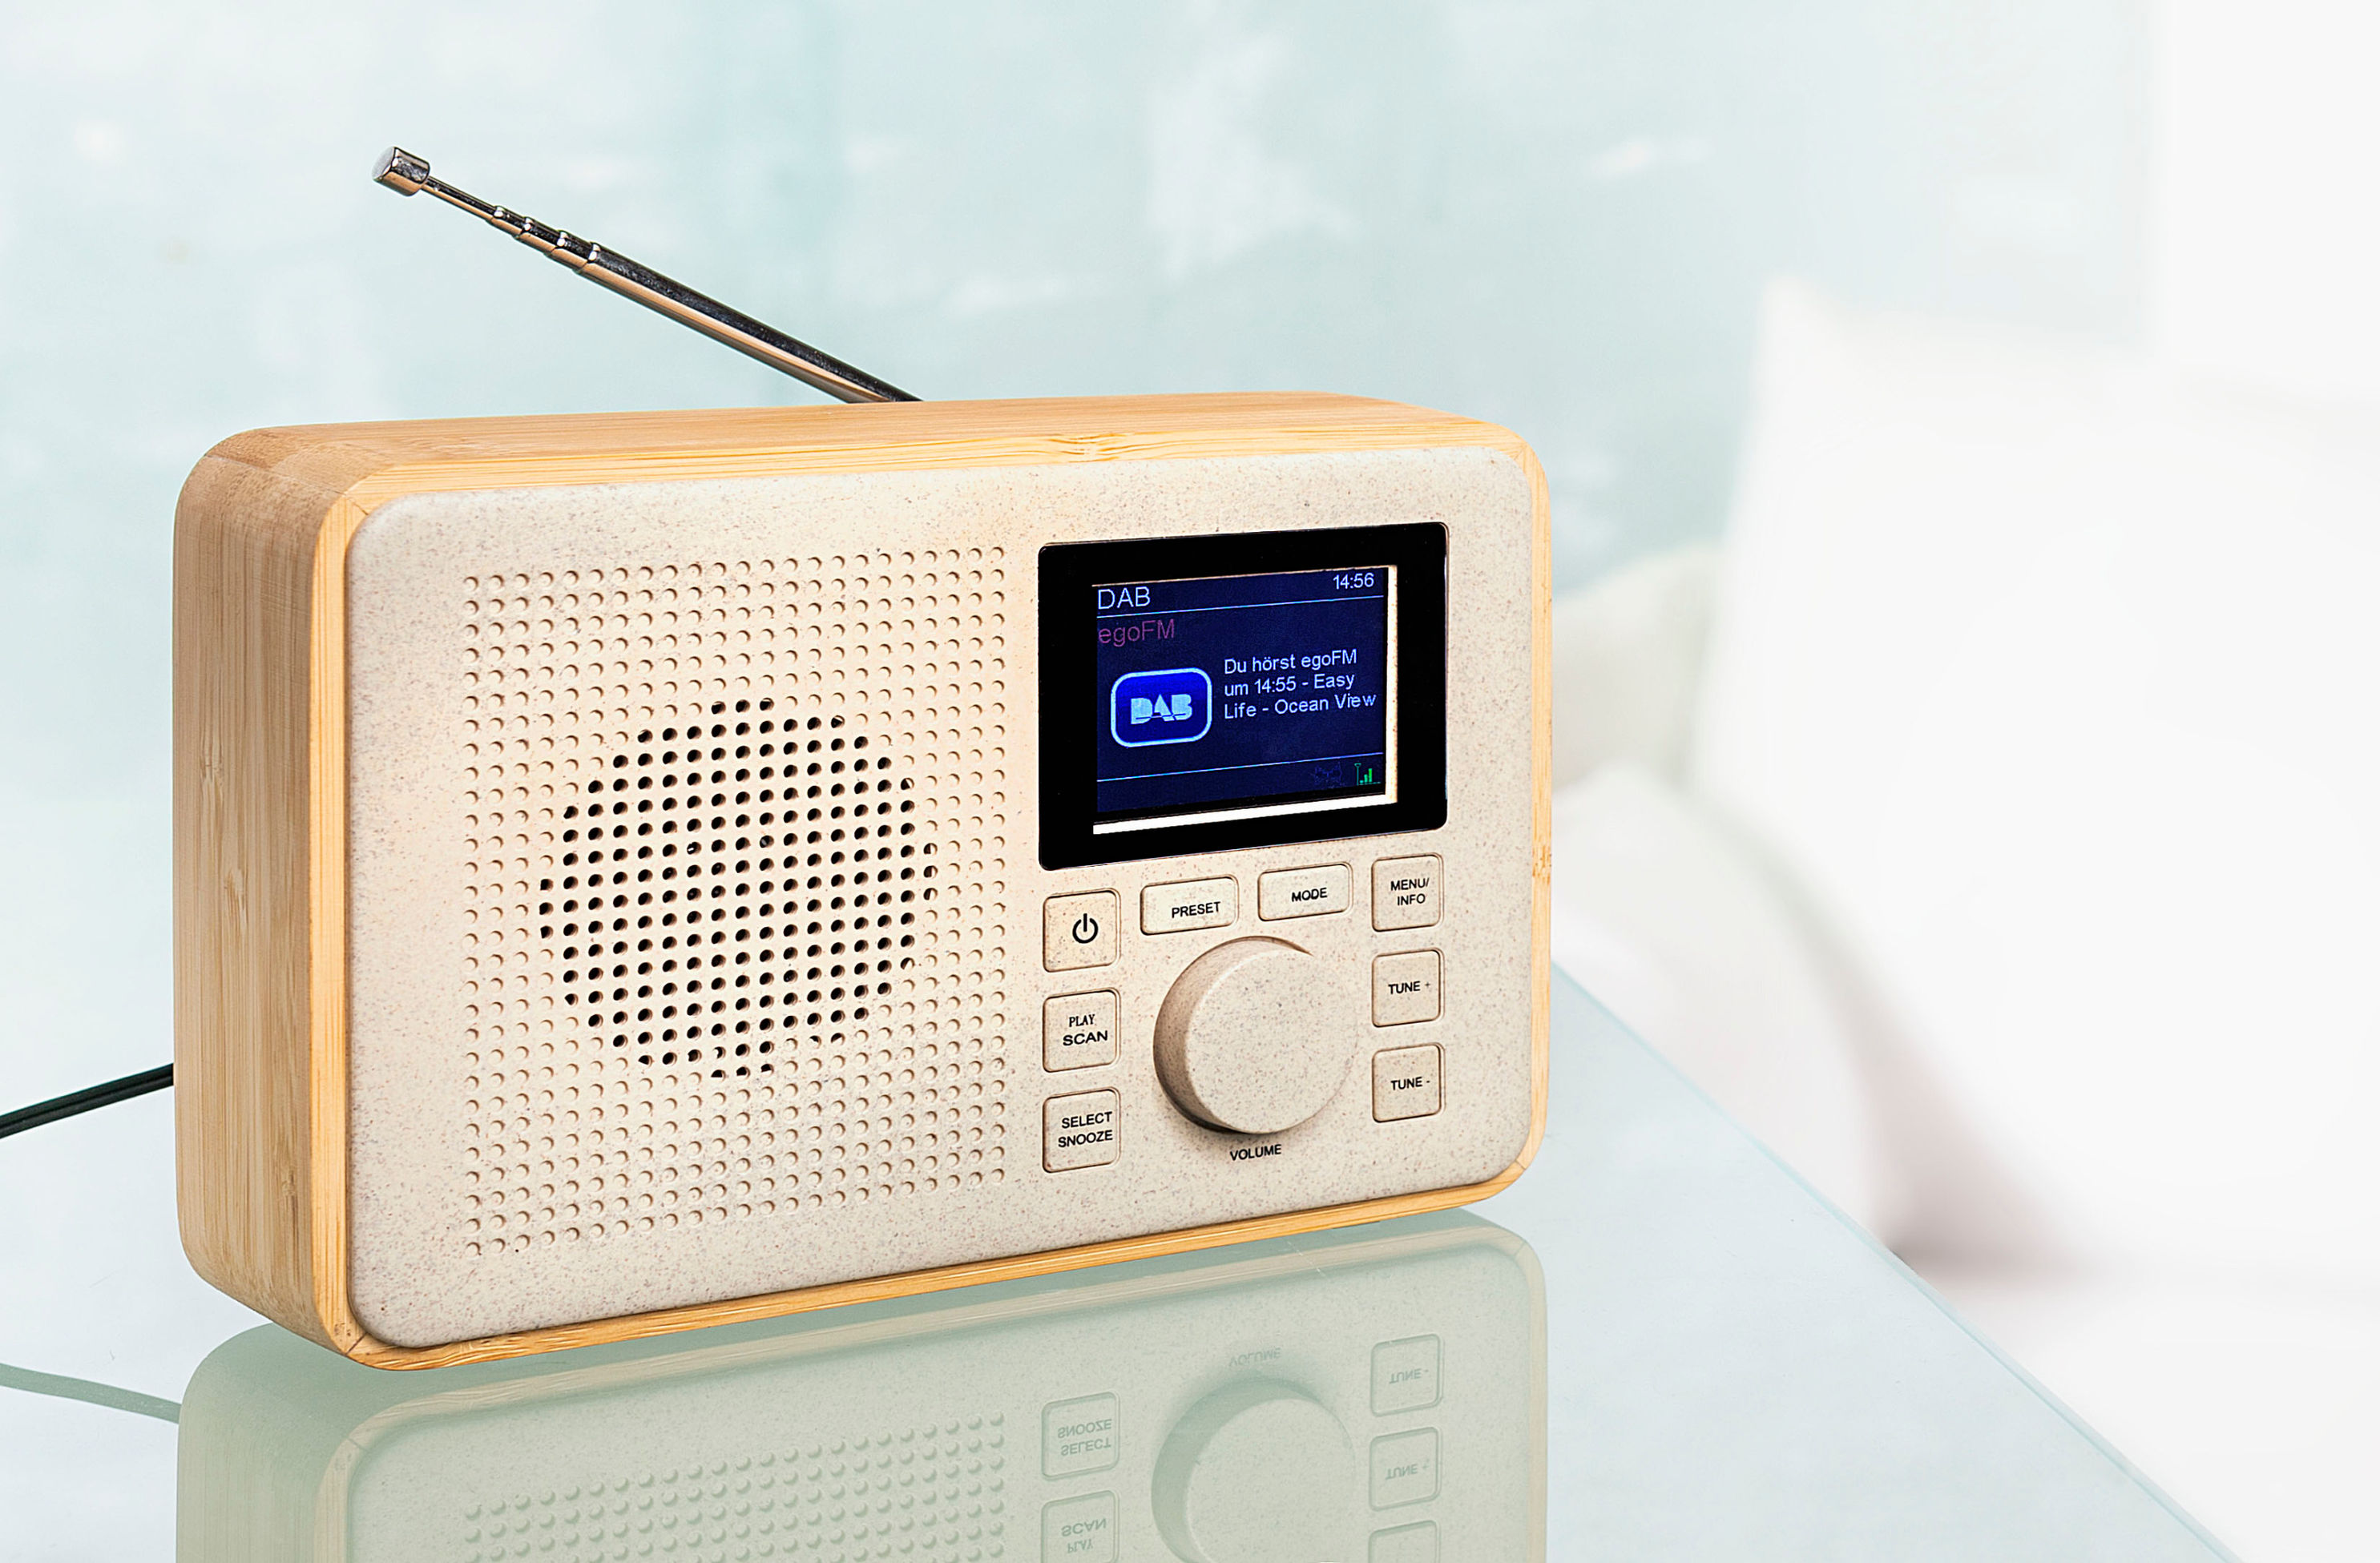 Tragbares DAB-Radio mit Holzrahmen bestellen | Weltbild.ch